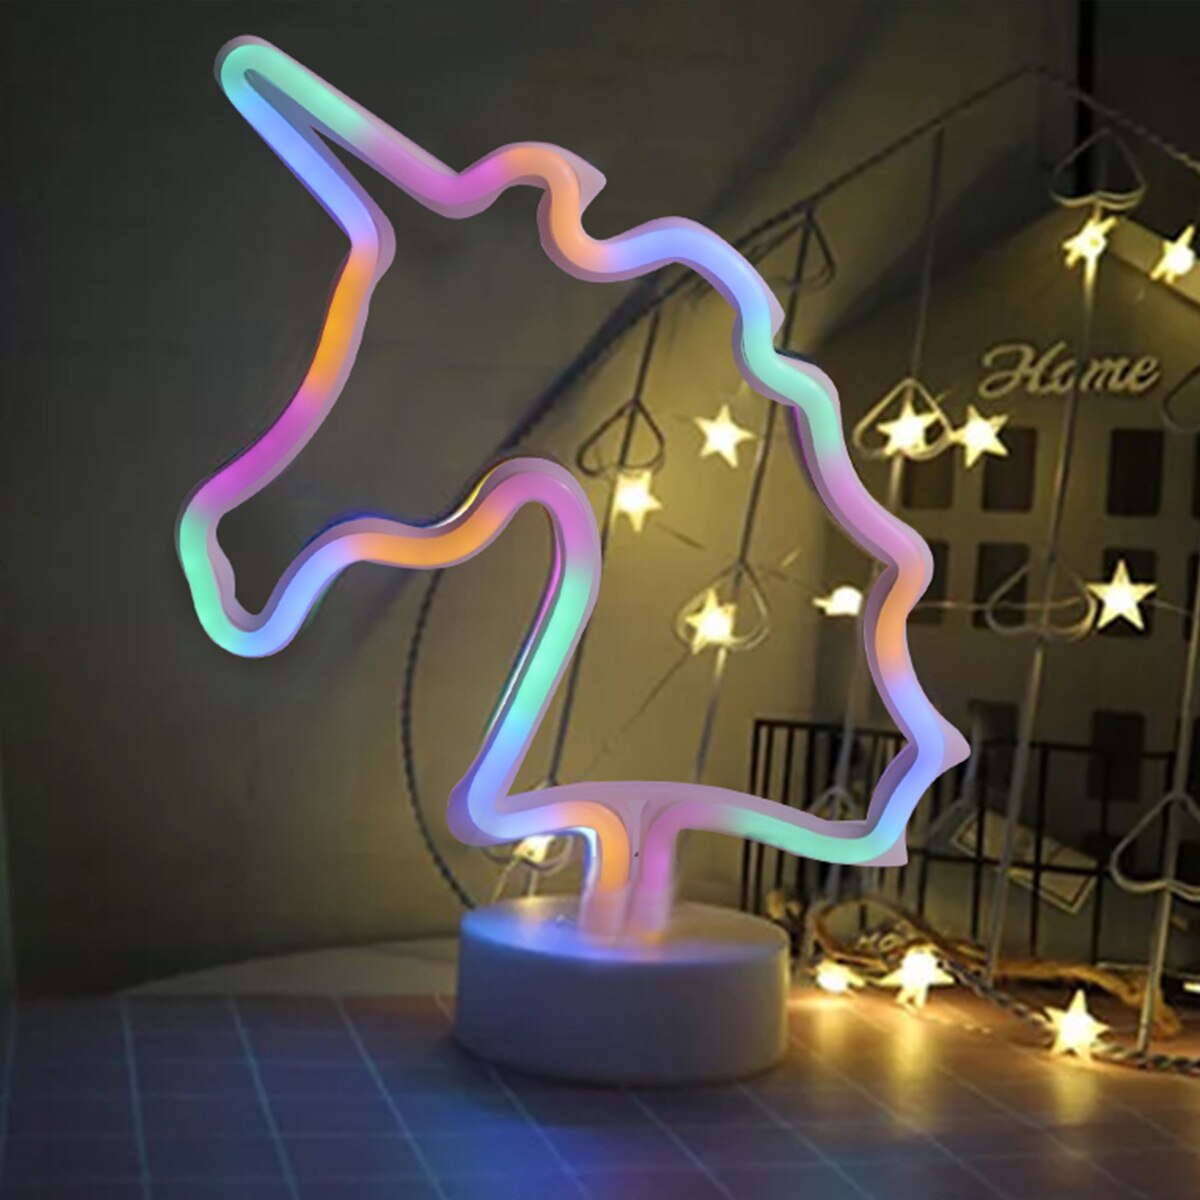 Neon Led Verlichting Teken Nachtlampje Art Decoratieve Verlichting Kinderen Home Decor Voor Woonkamer Slaapkamer Kleurrijke Lamp: Unicorn-colorful